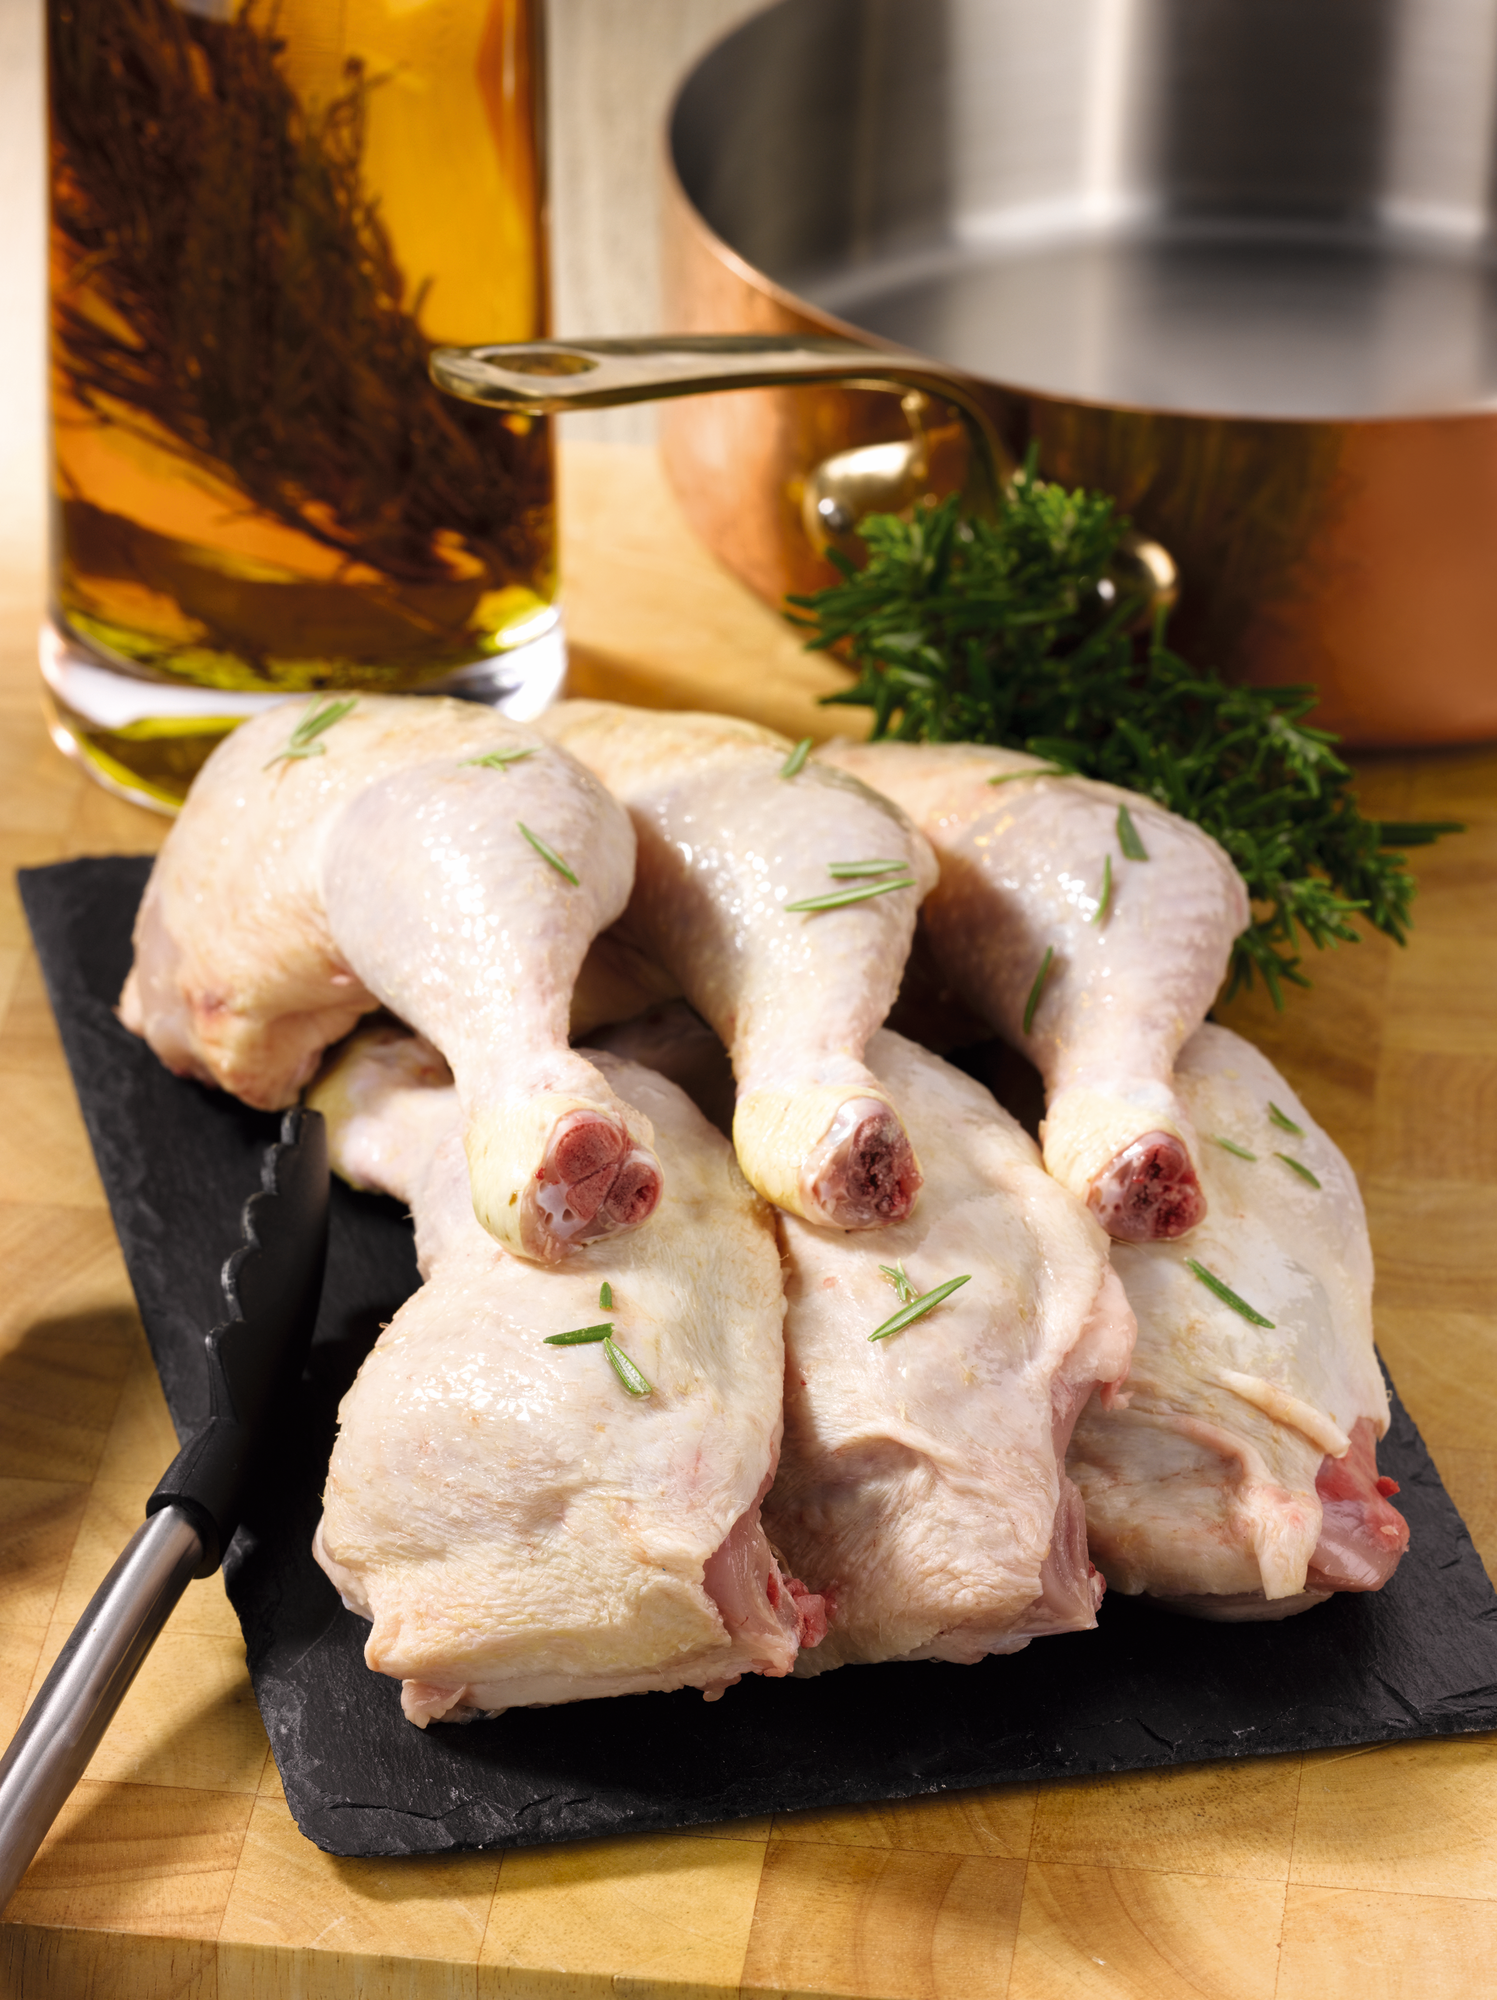 6 Cuisses de poulet avec partie de dos
"Maître Coq", "Douce France" ou "Le Gaulois"*